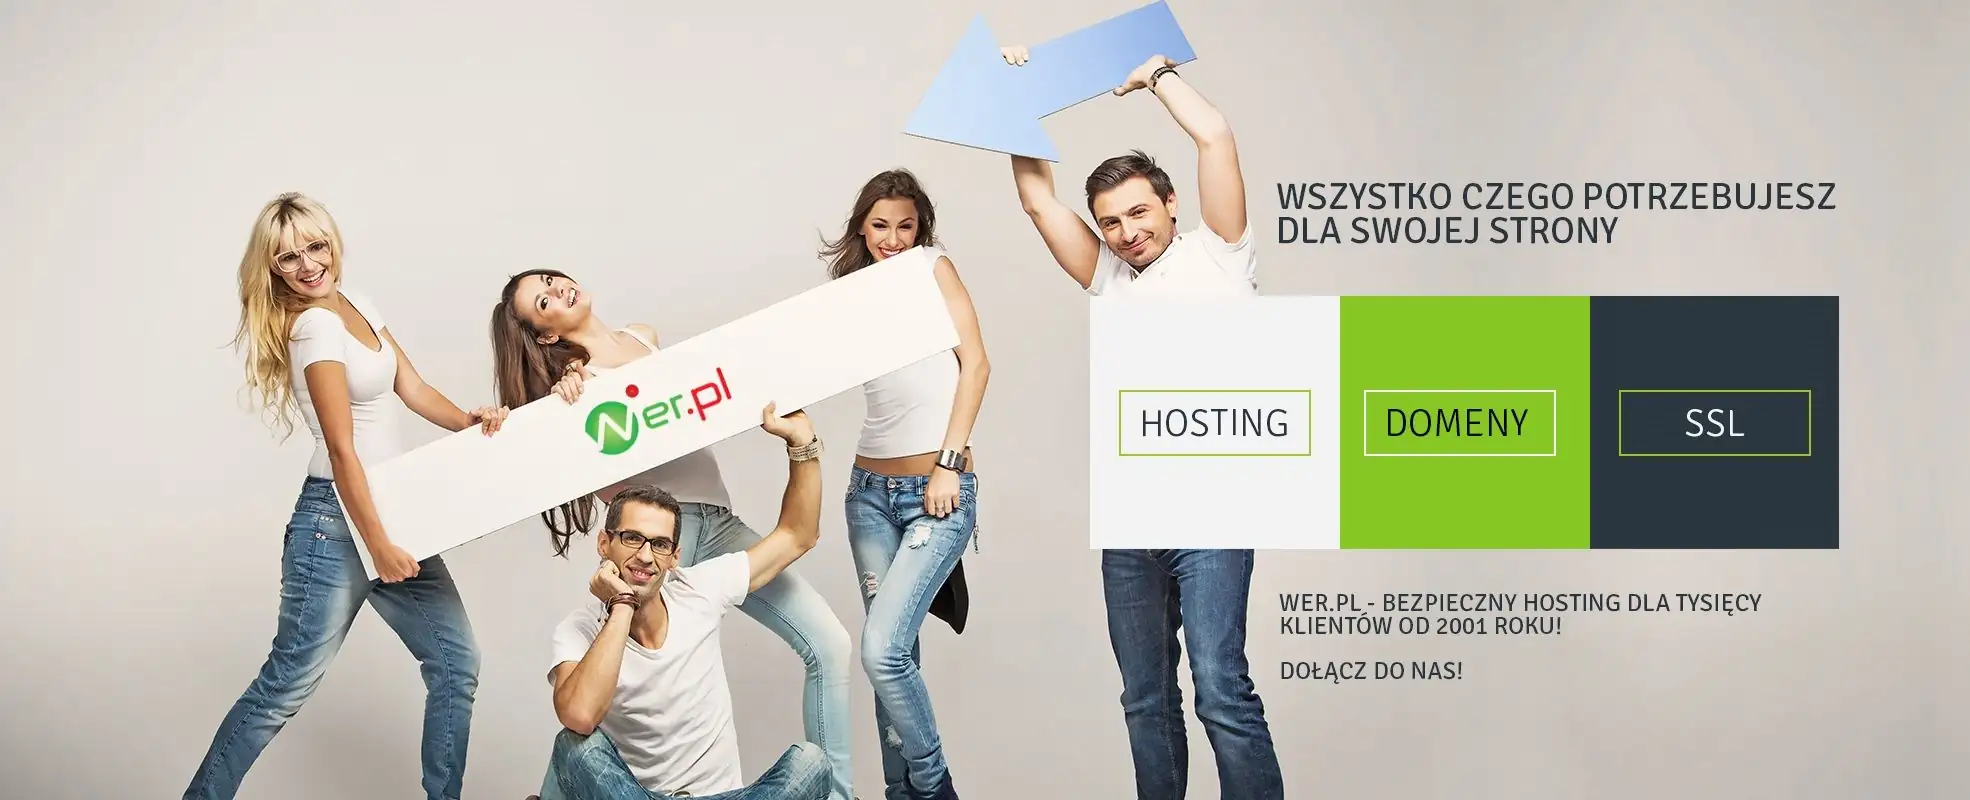 Obraz z pakietami usług oferty Wer.pl - hosting, domeny, certyfikaty SSL